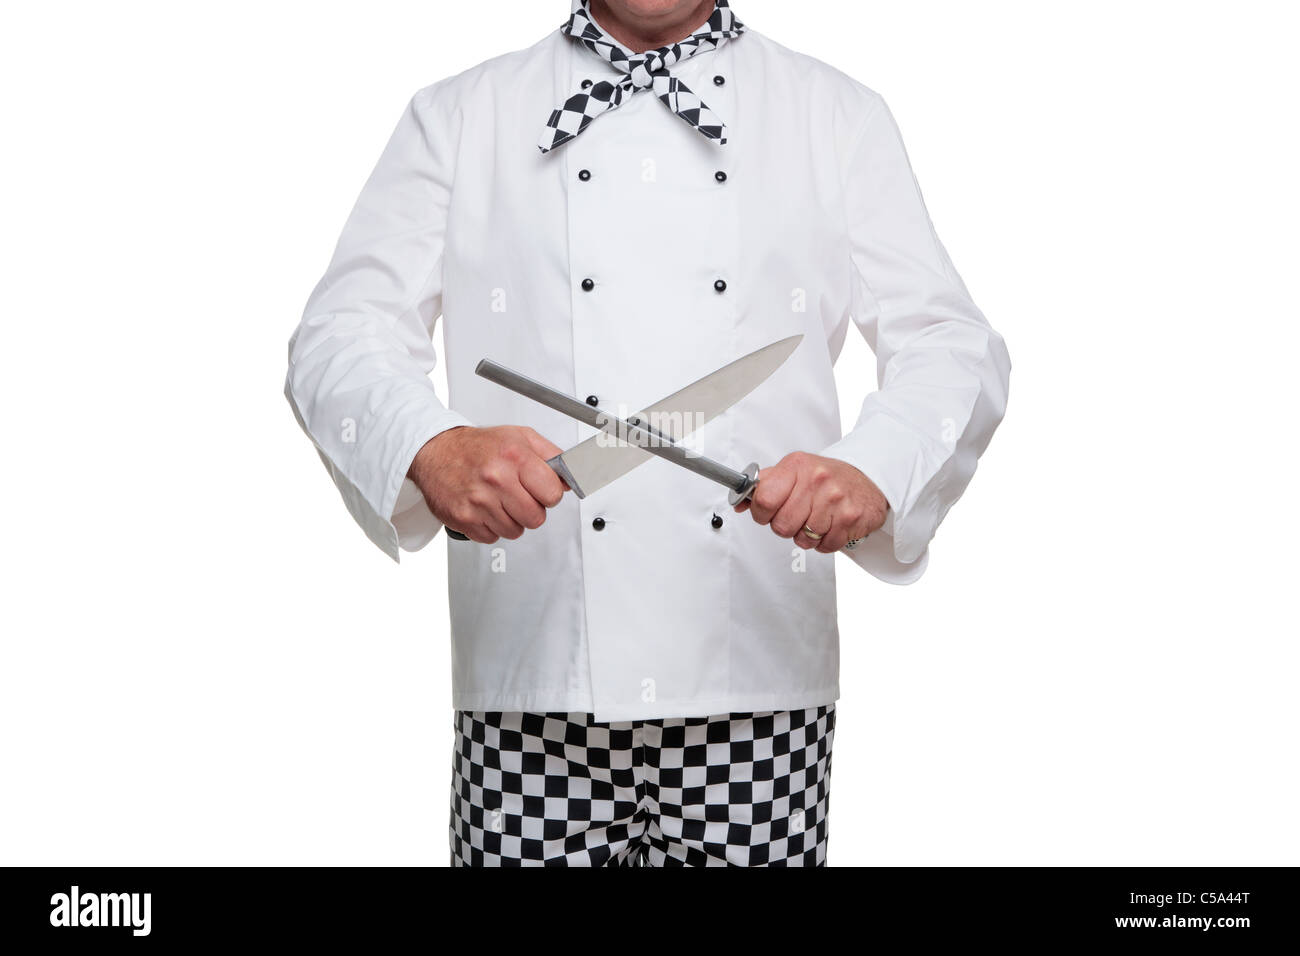 Foto von einem Koch in Uniform schärfen seine Schnitzmesser isoliert auf einem weißen Hintergrund. Stockfoto